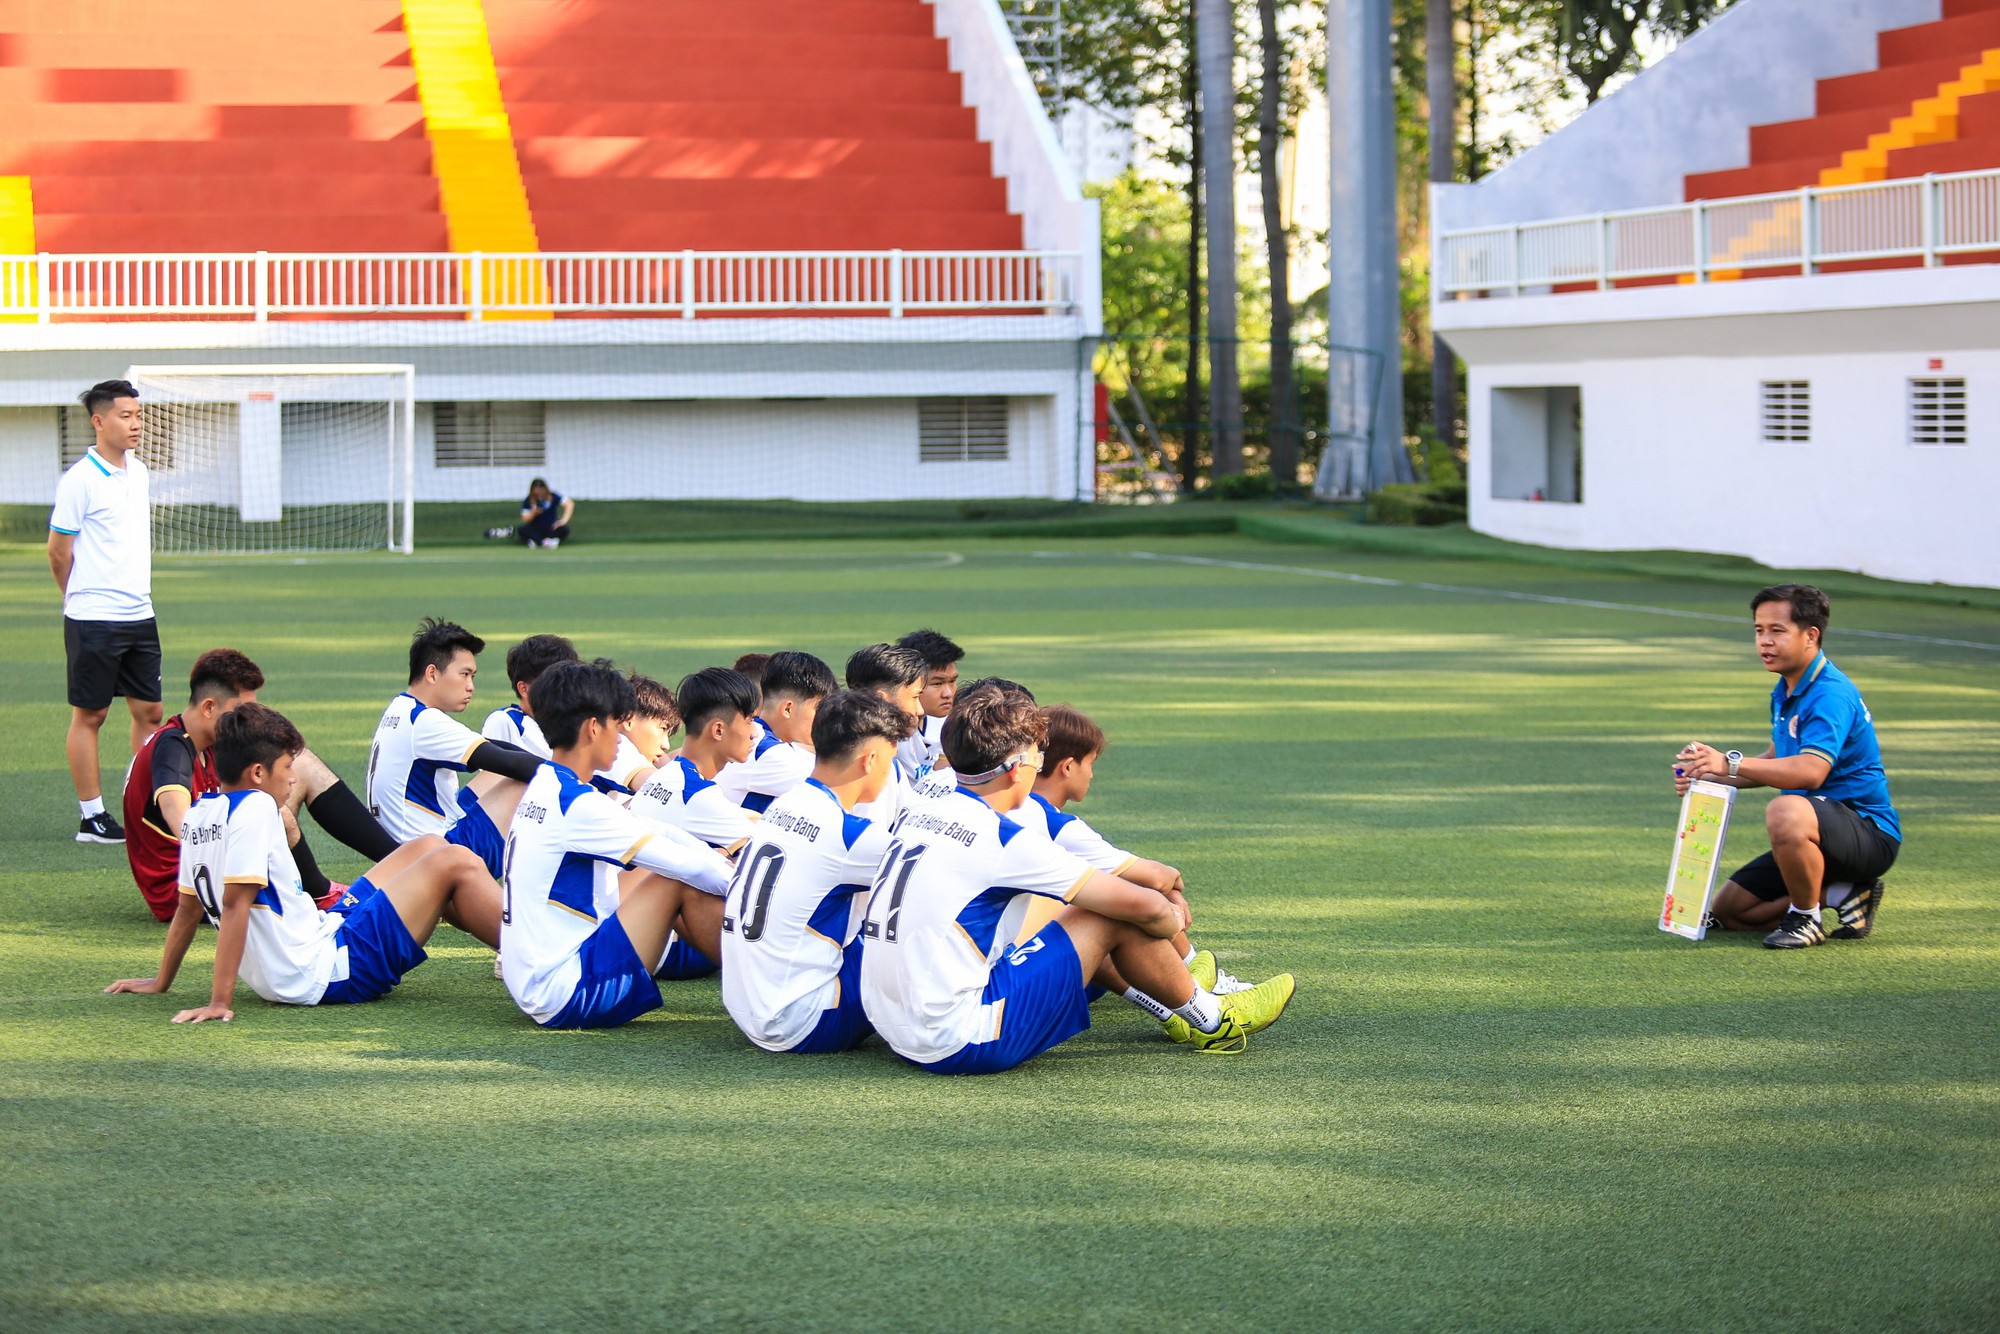 HLV đội ĐH Quốc tế Hồng Bàng nói lý do trò chuyện cầu thủ gần 20 phút - Ảnh 2.